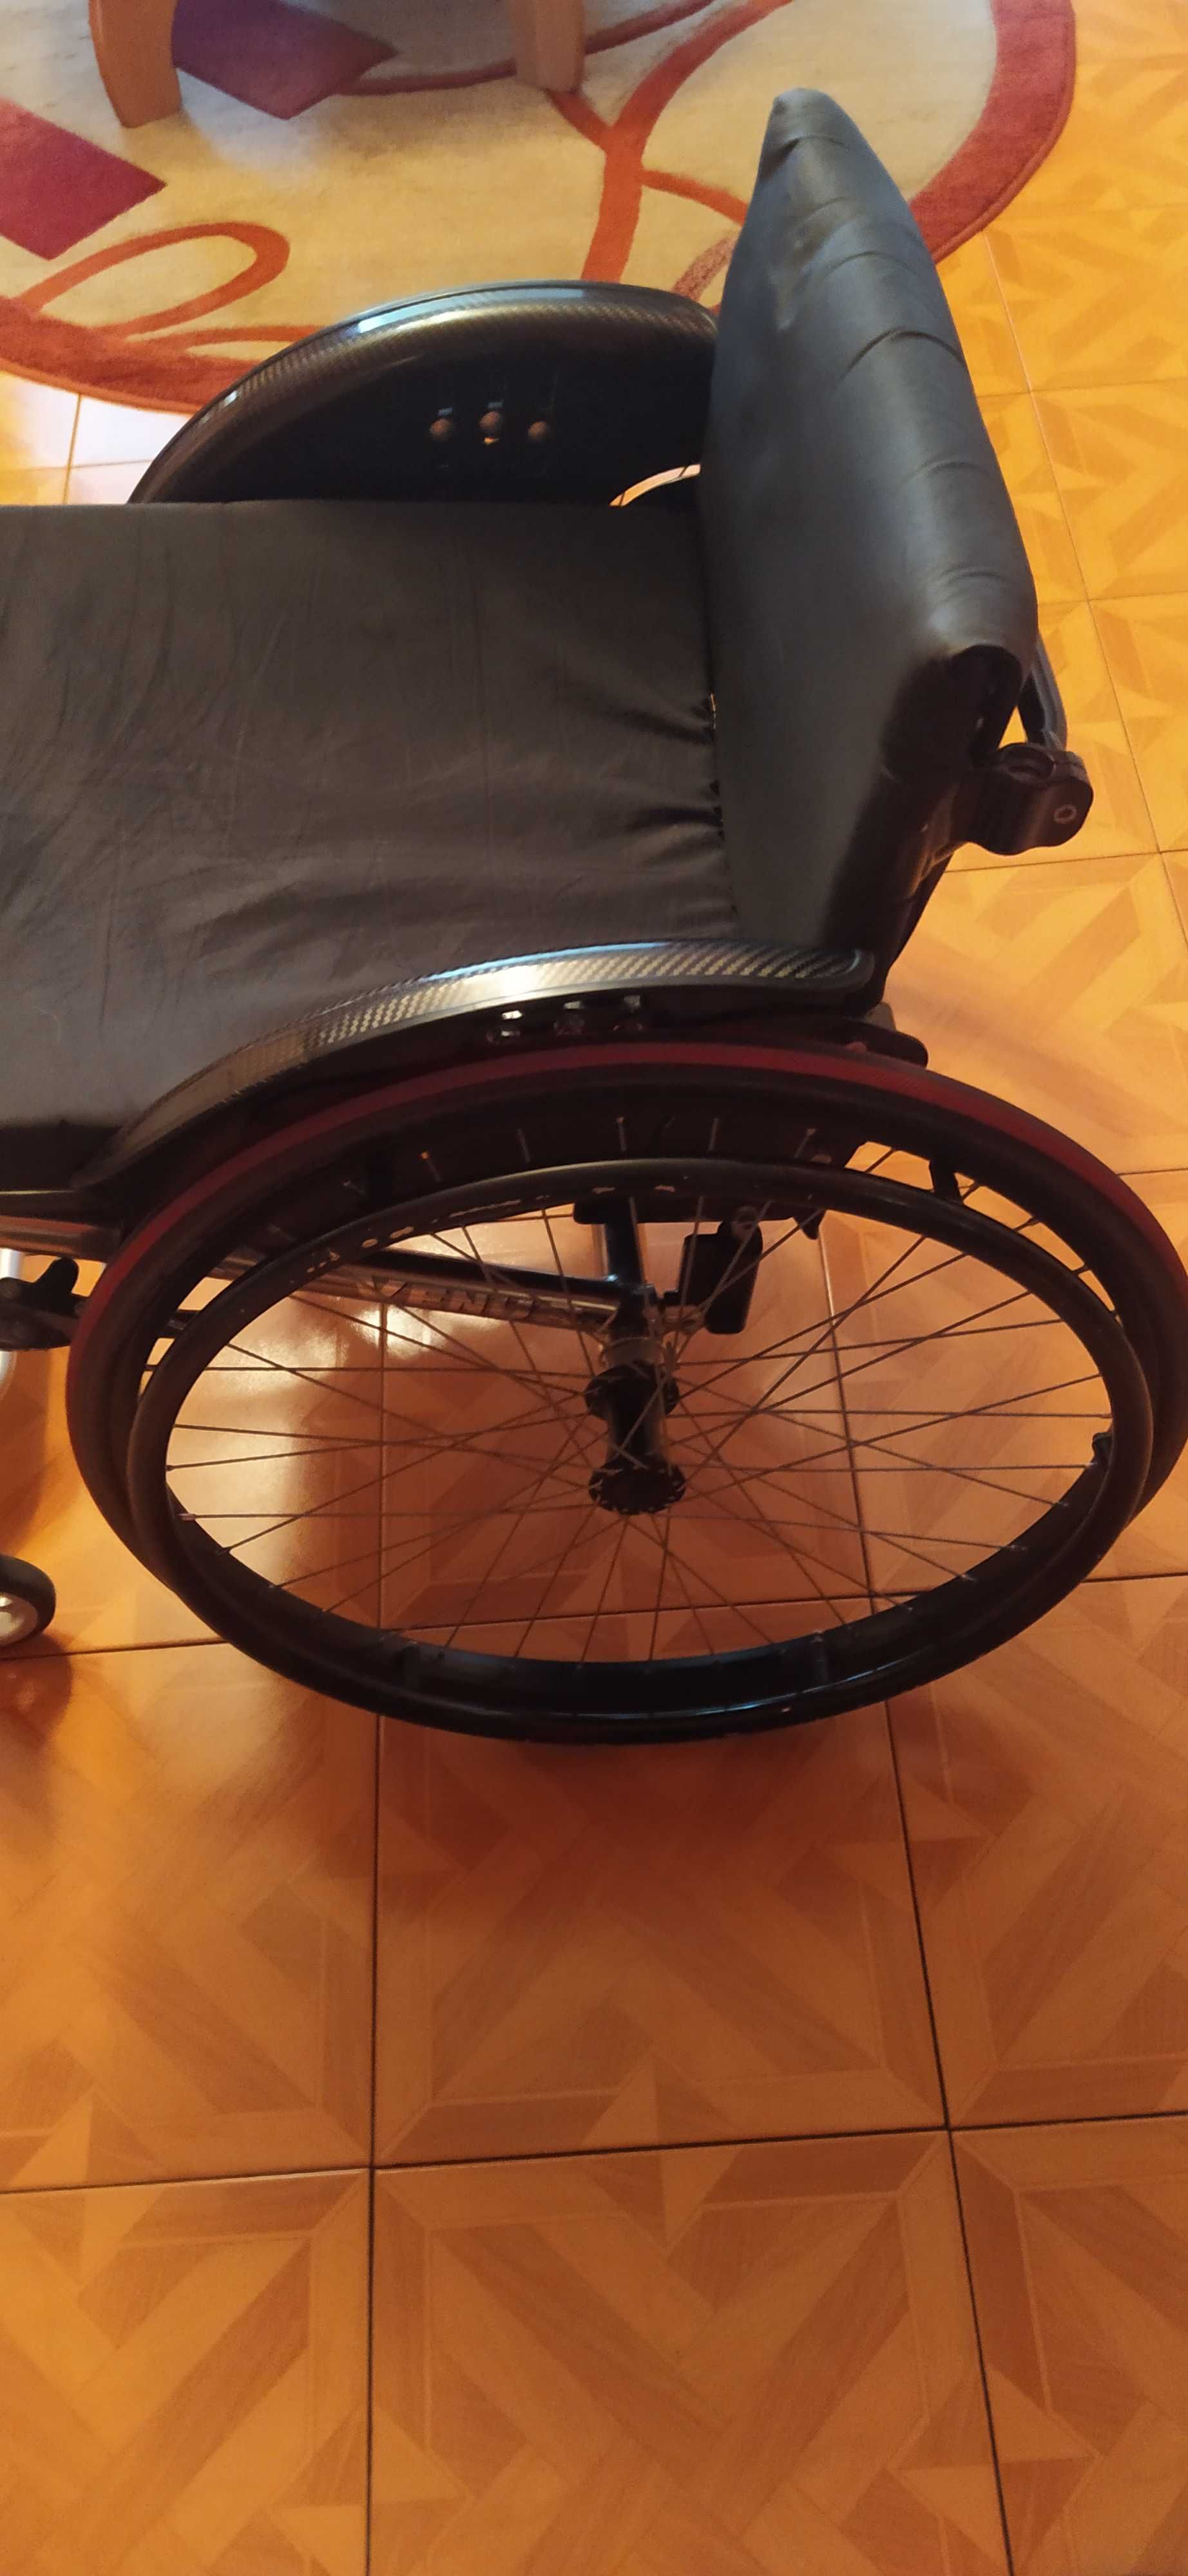 Okazja! Sprzedam wózek inwalidzki aktywny Offcarr